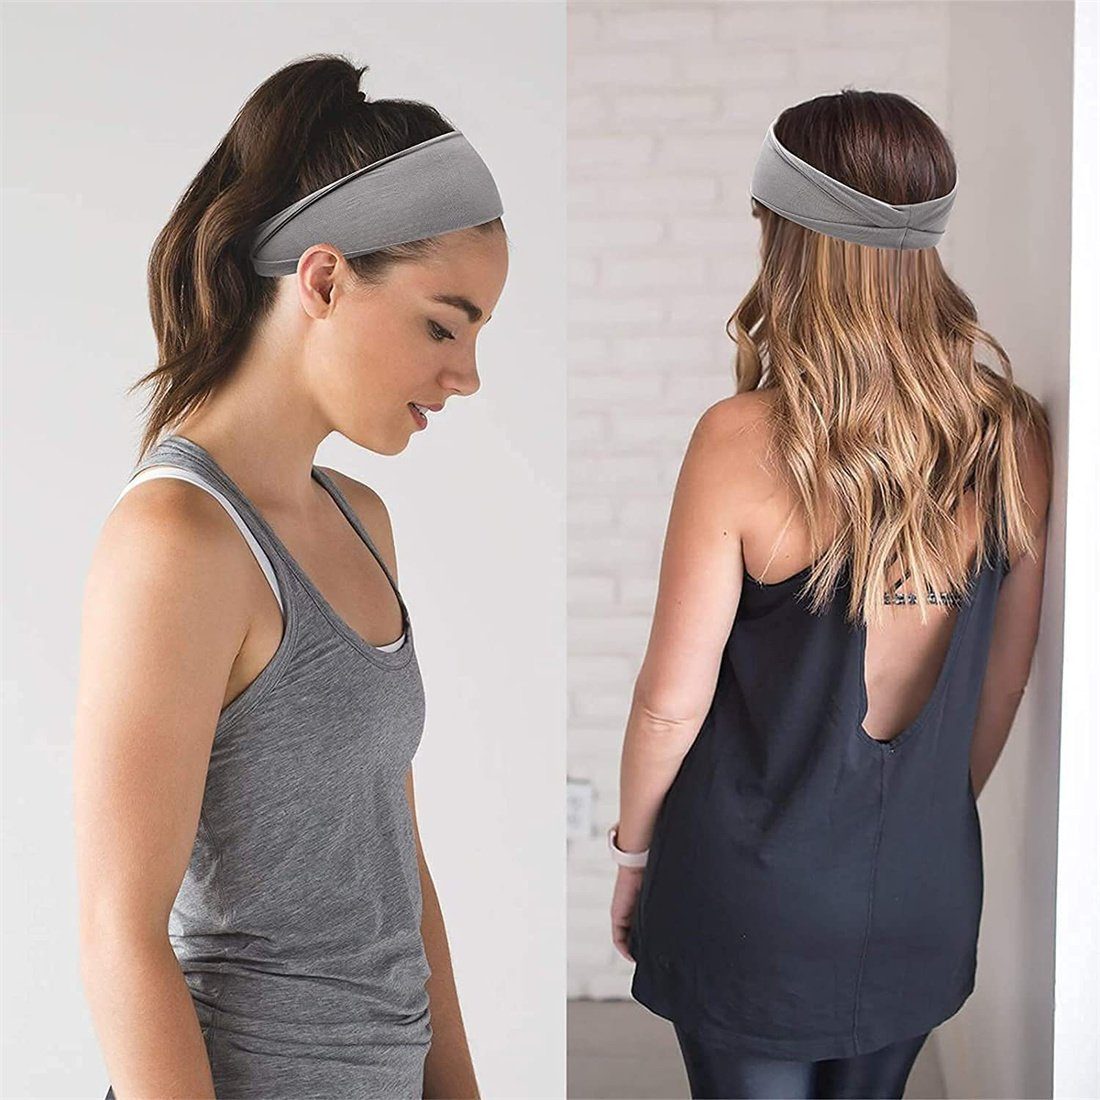 Frauen Stück DAYUT Stirnband Stirnband elastische Yoga Haarband Workout breite 6